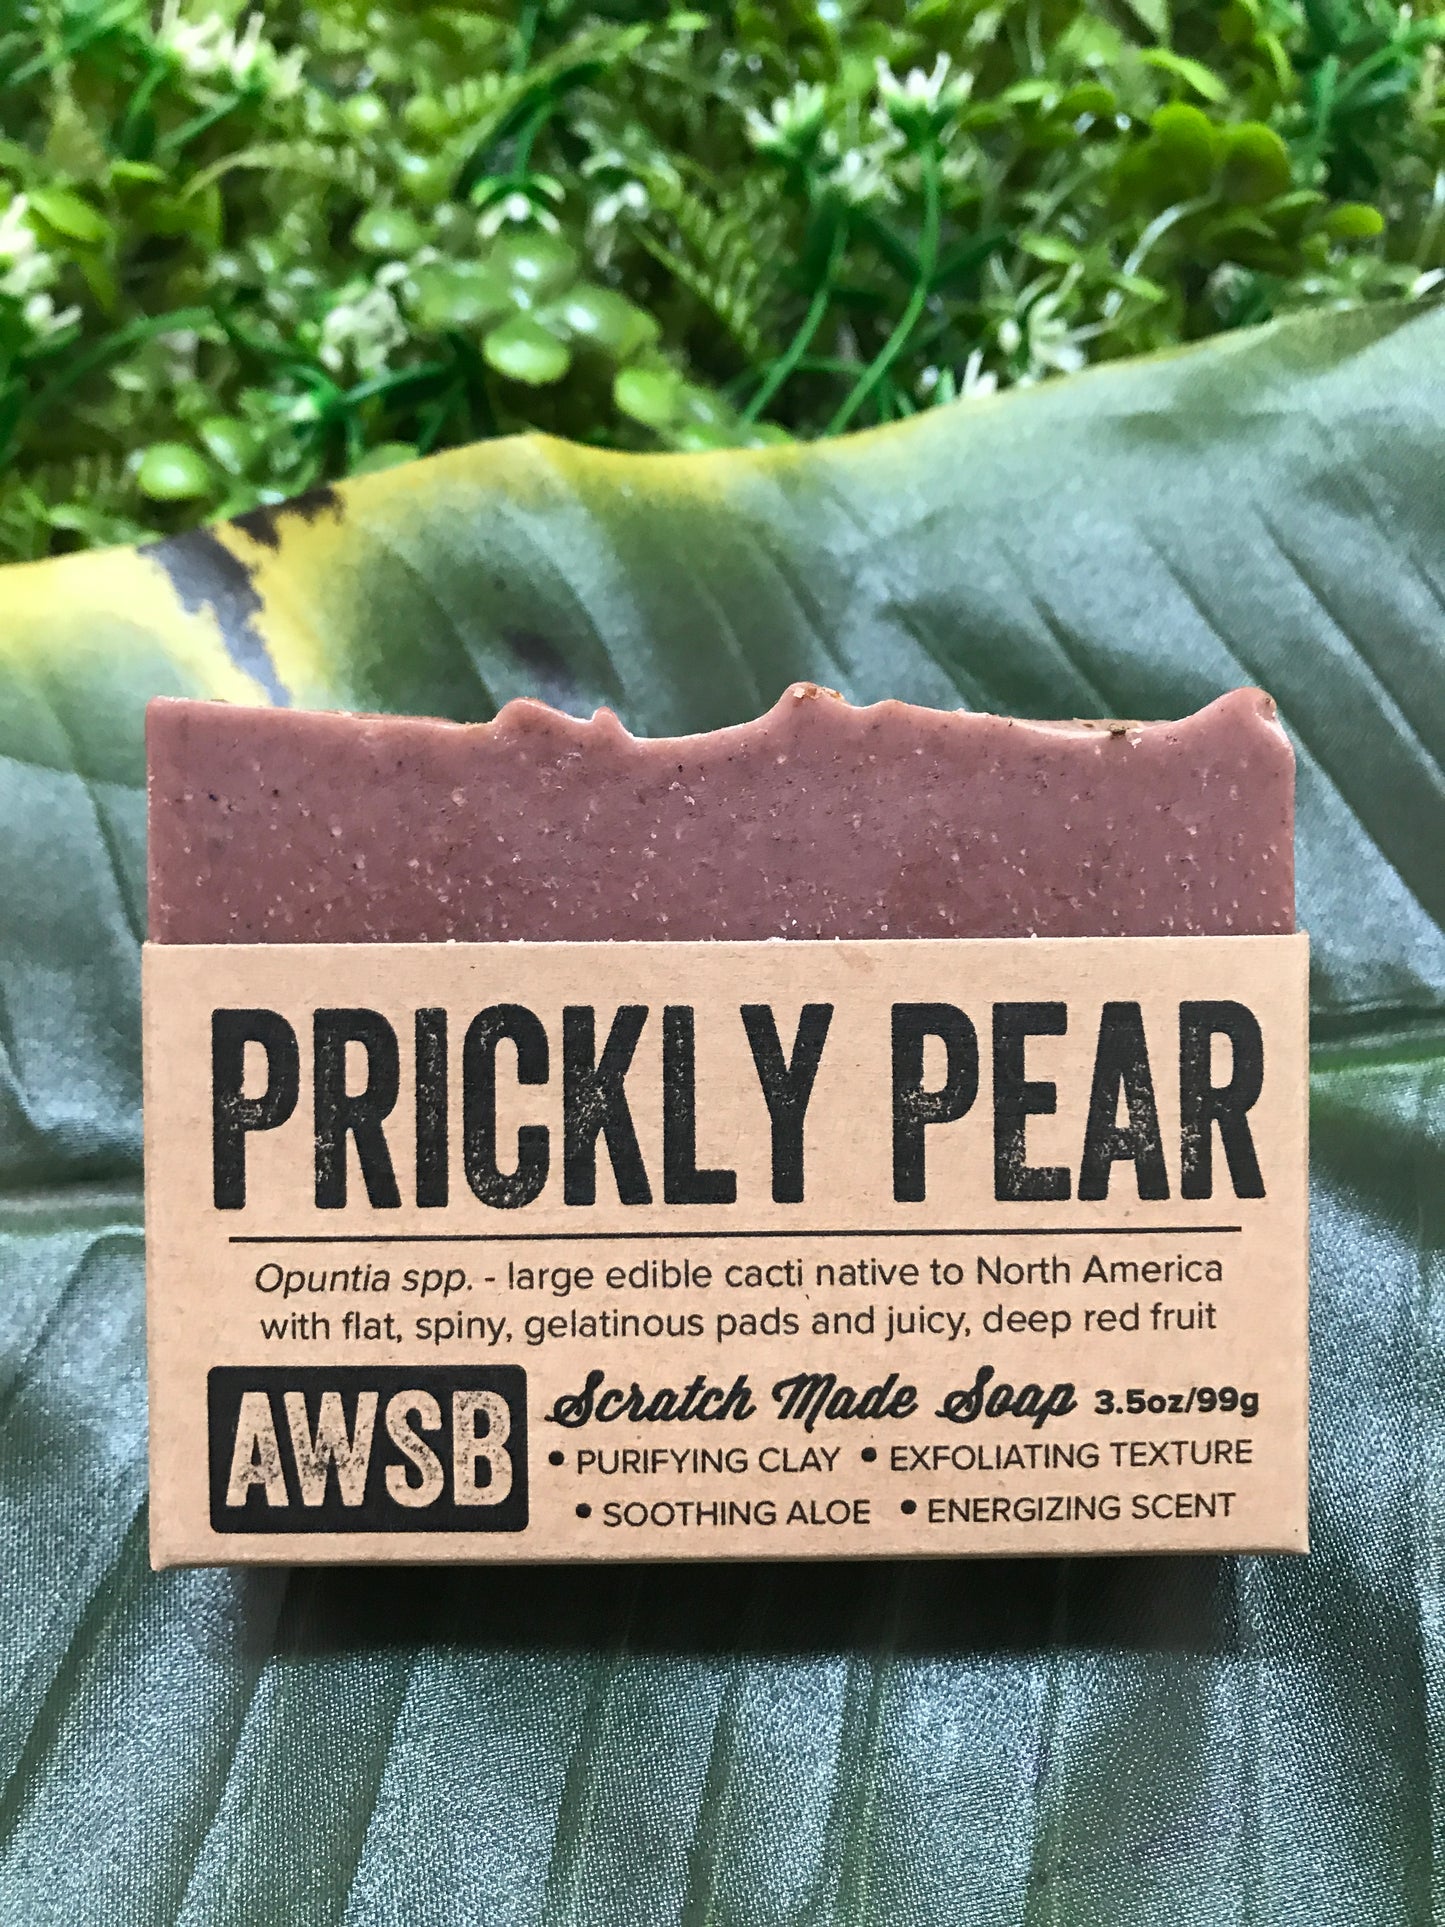 Prickly Pear Soap | A Wild Soap Bar - InRugCo Studio & Gift Shop